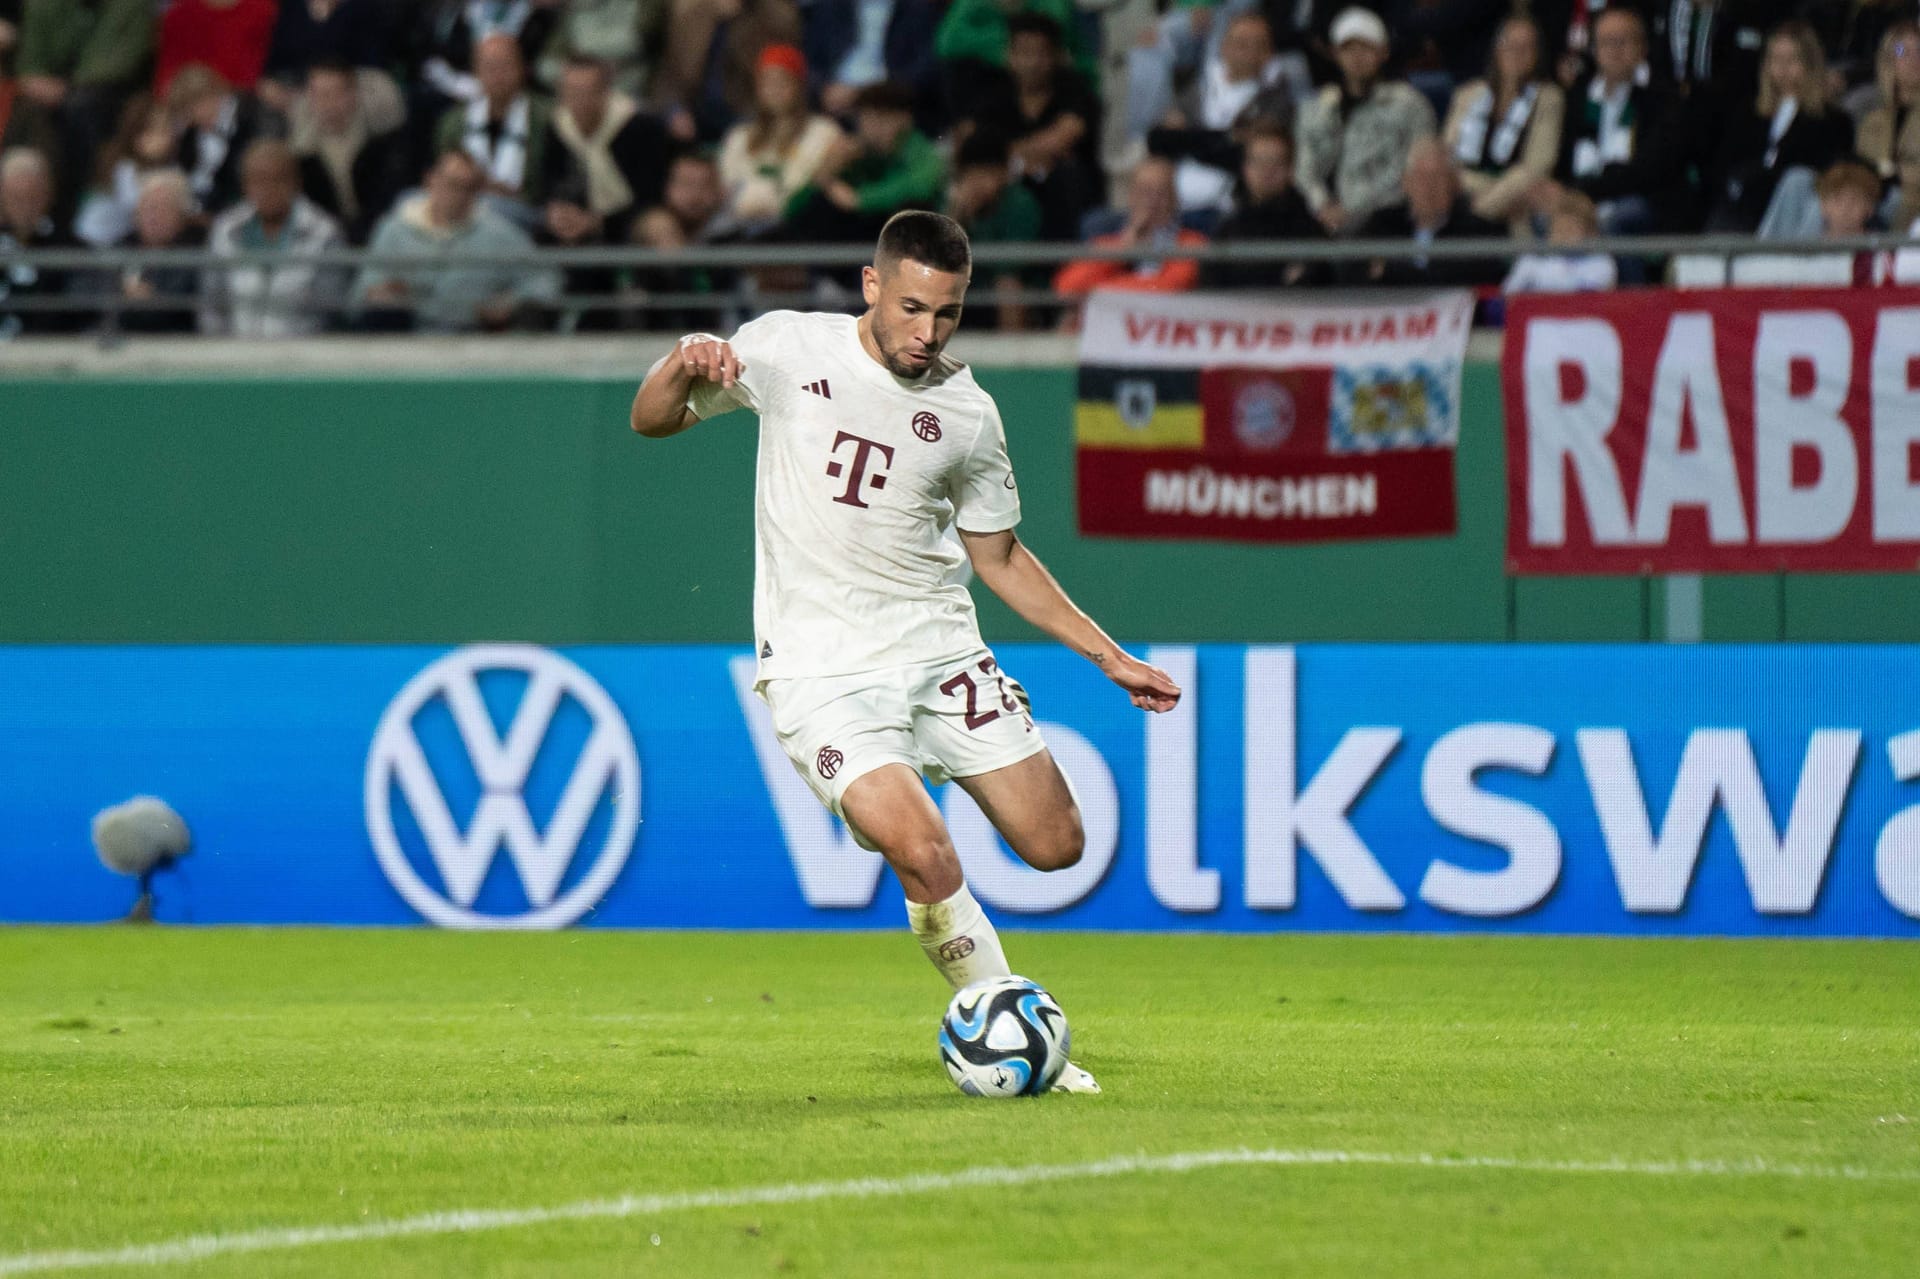 Raphaël Guerreiro (ab 63.): Der Neuzugang feierte nach seinem Muskelbündelriss sein Debüt für Bayern. Man sah ihn viel lachen und sehr aktiv über die linke Seite kommen. Note 3